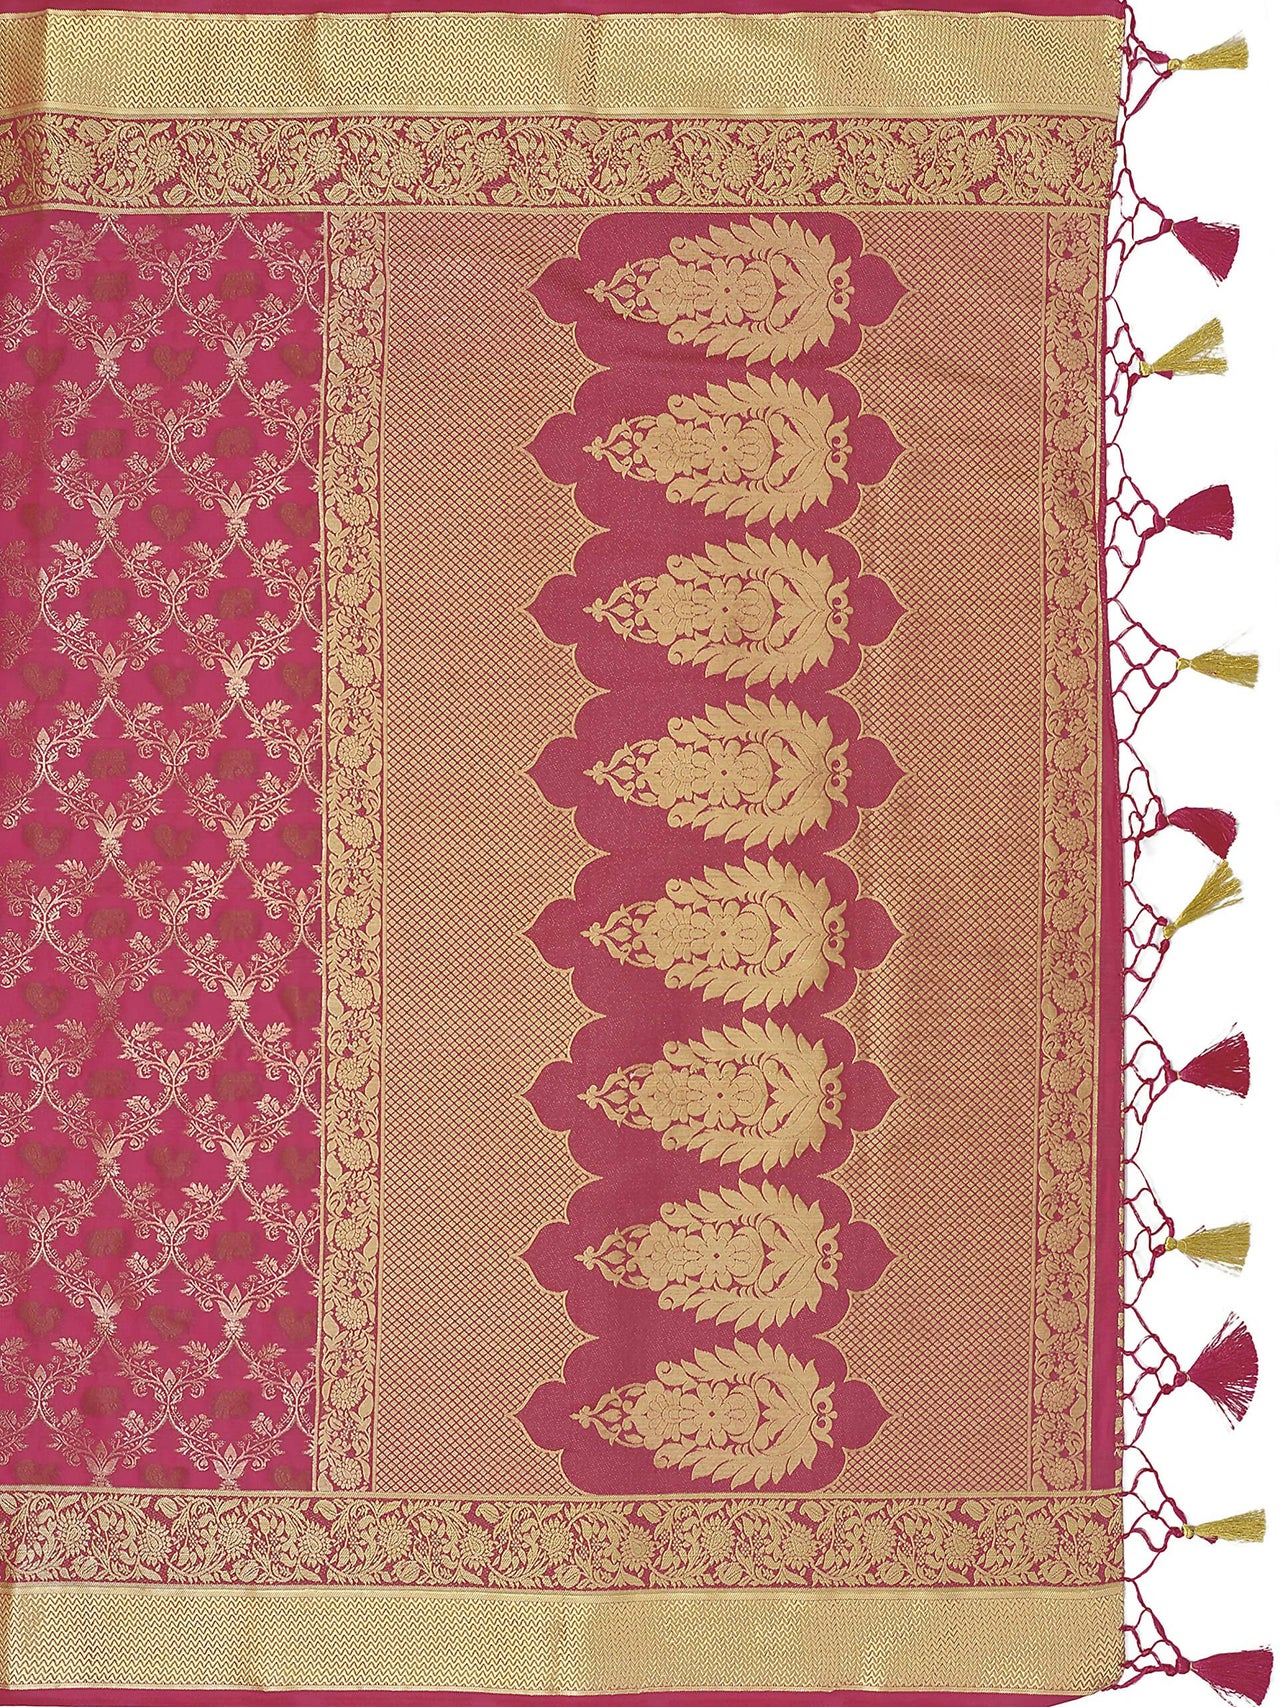 Mimosa Women's Kanchipuram Art Silk Pink Saree - Distacart